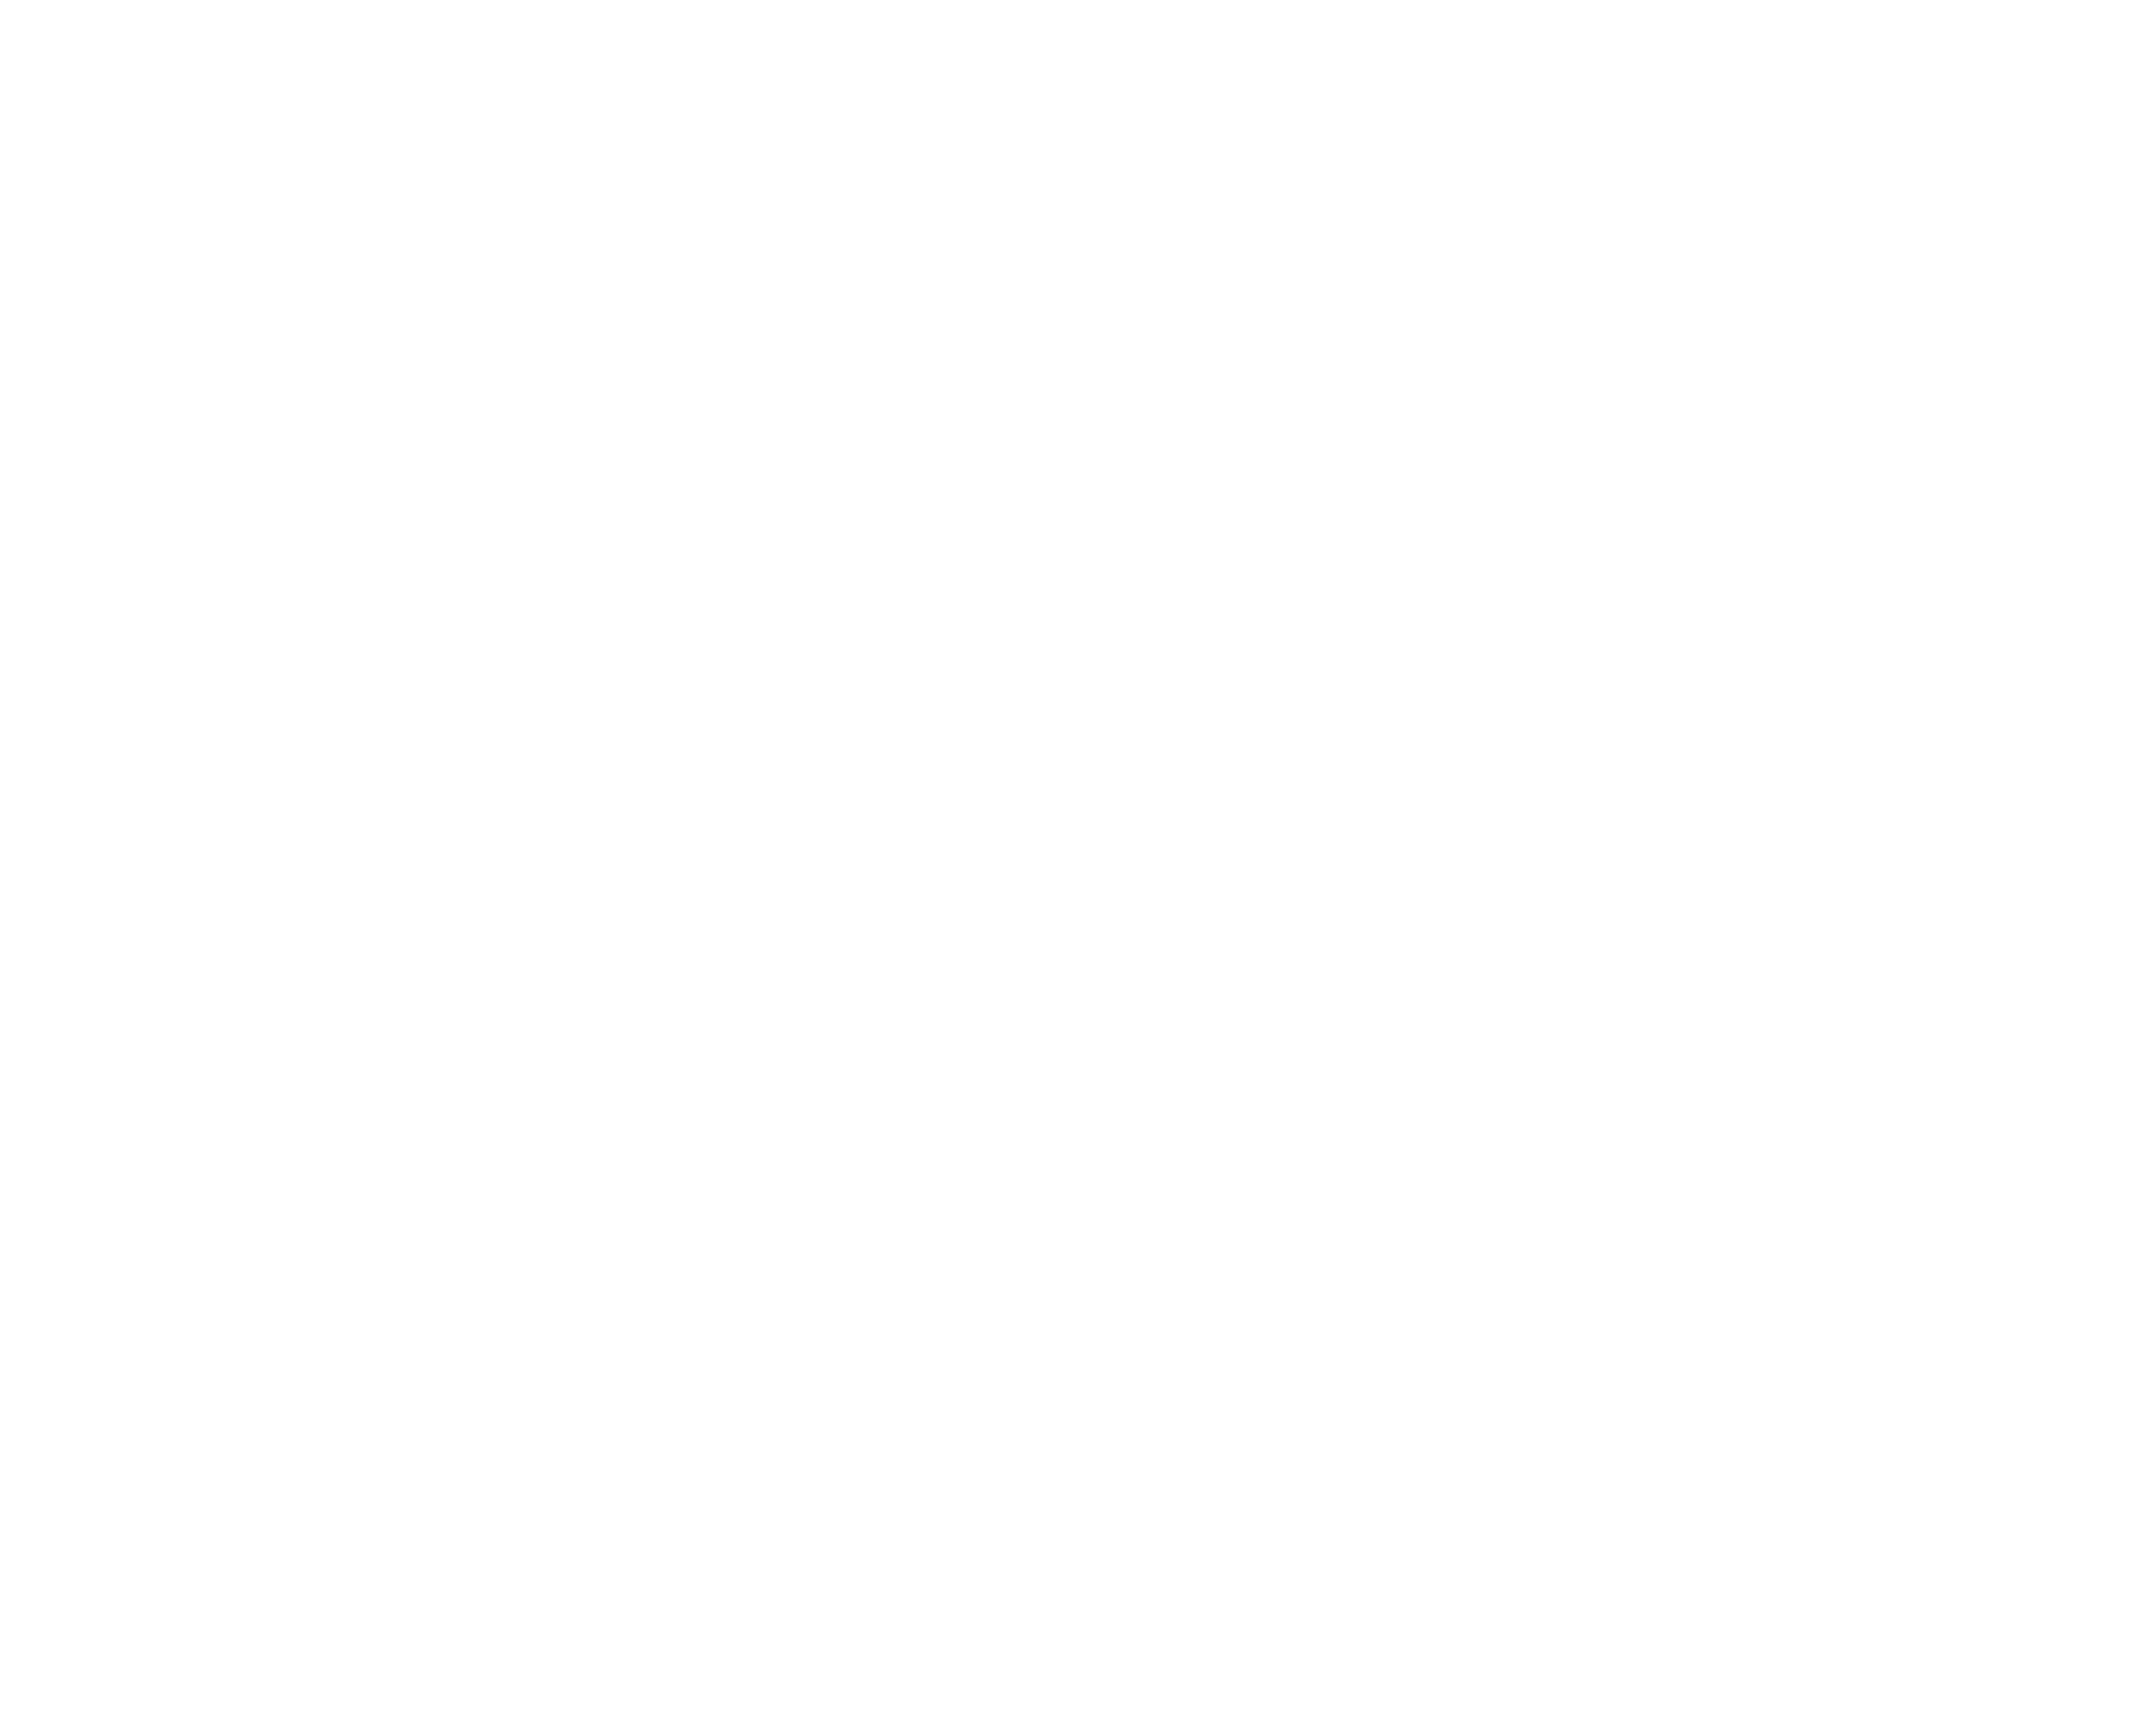 Imagem do logo do Hospital de Amor